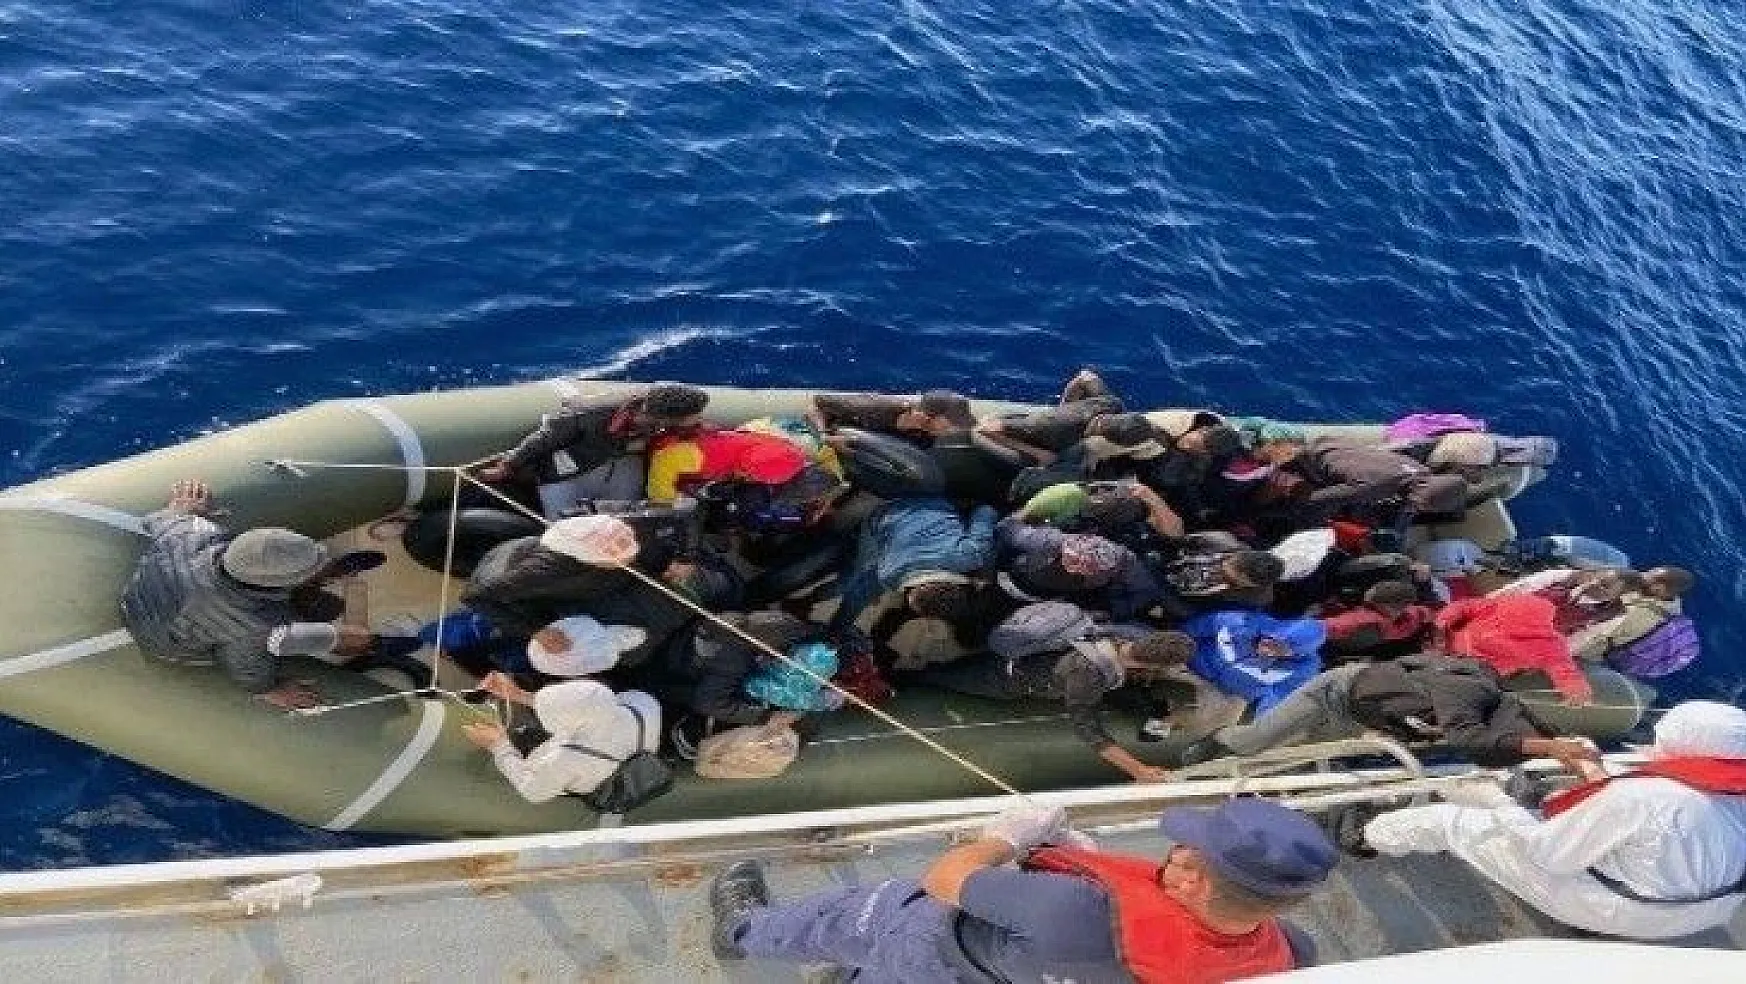 Yunan Sahil Güvenliği ekipleri göçmenleri ölüme terk ediyor